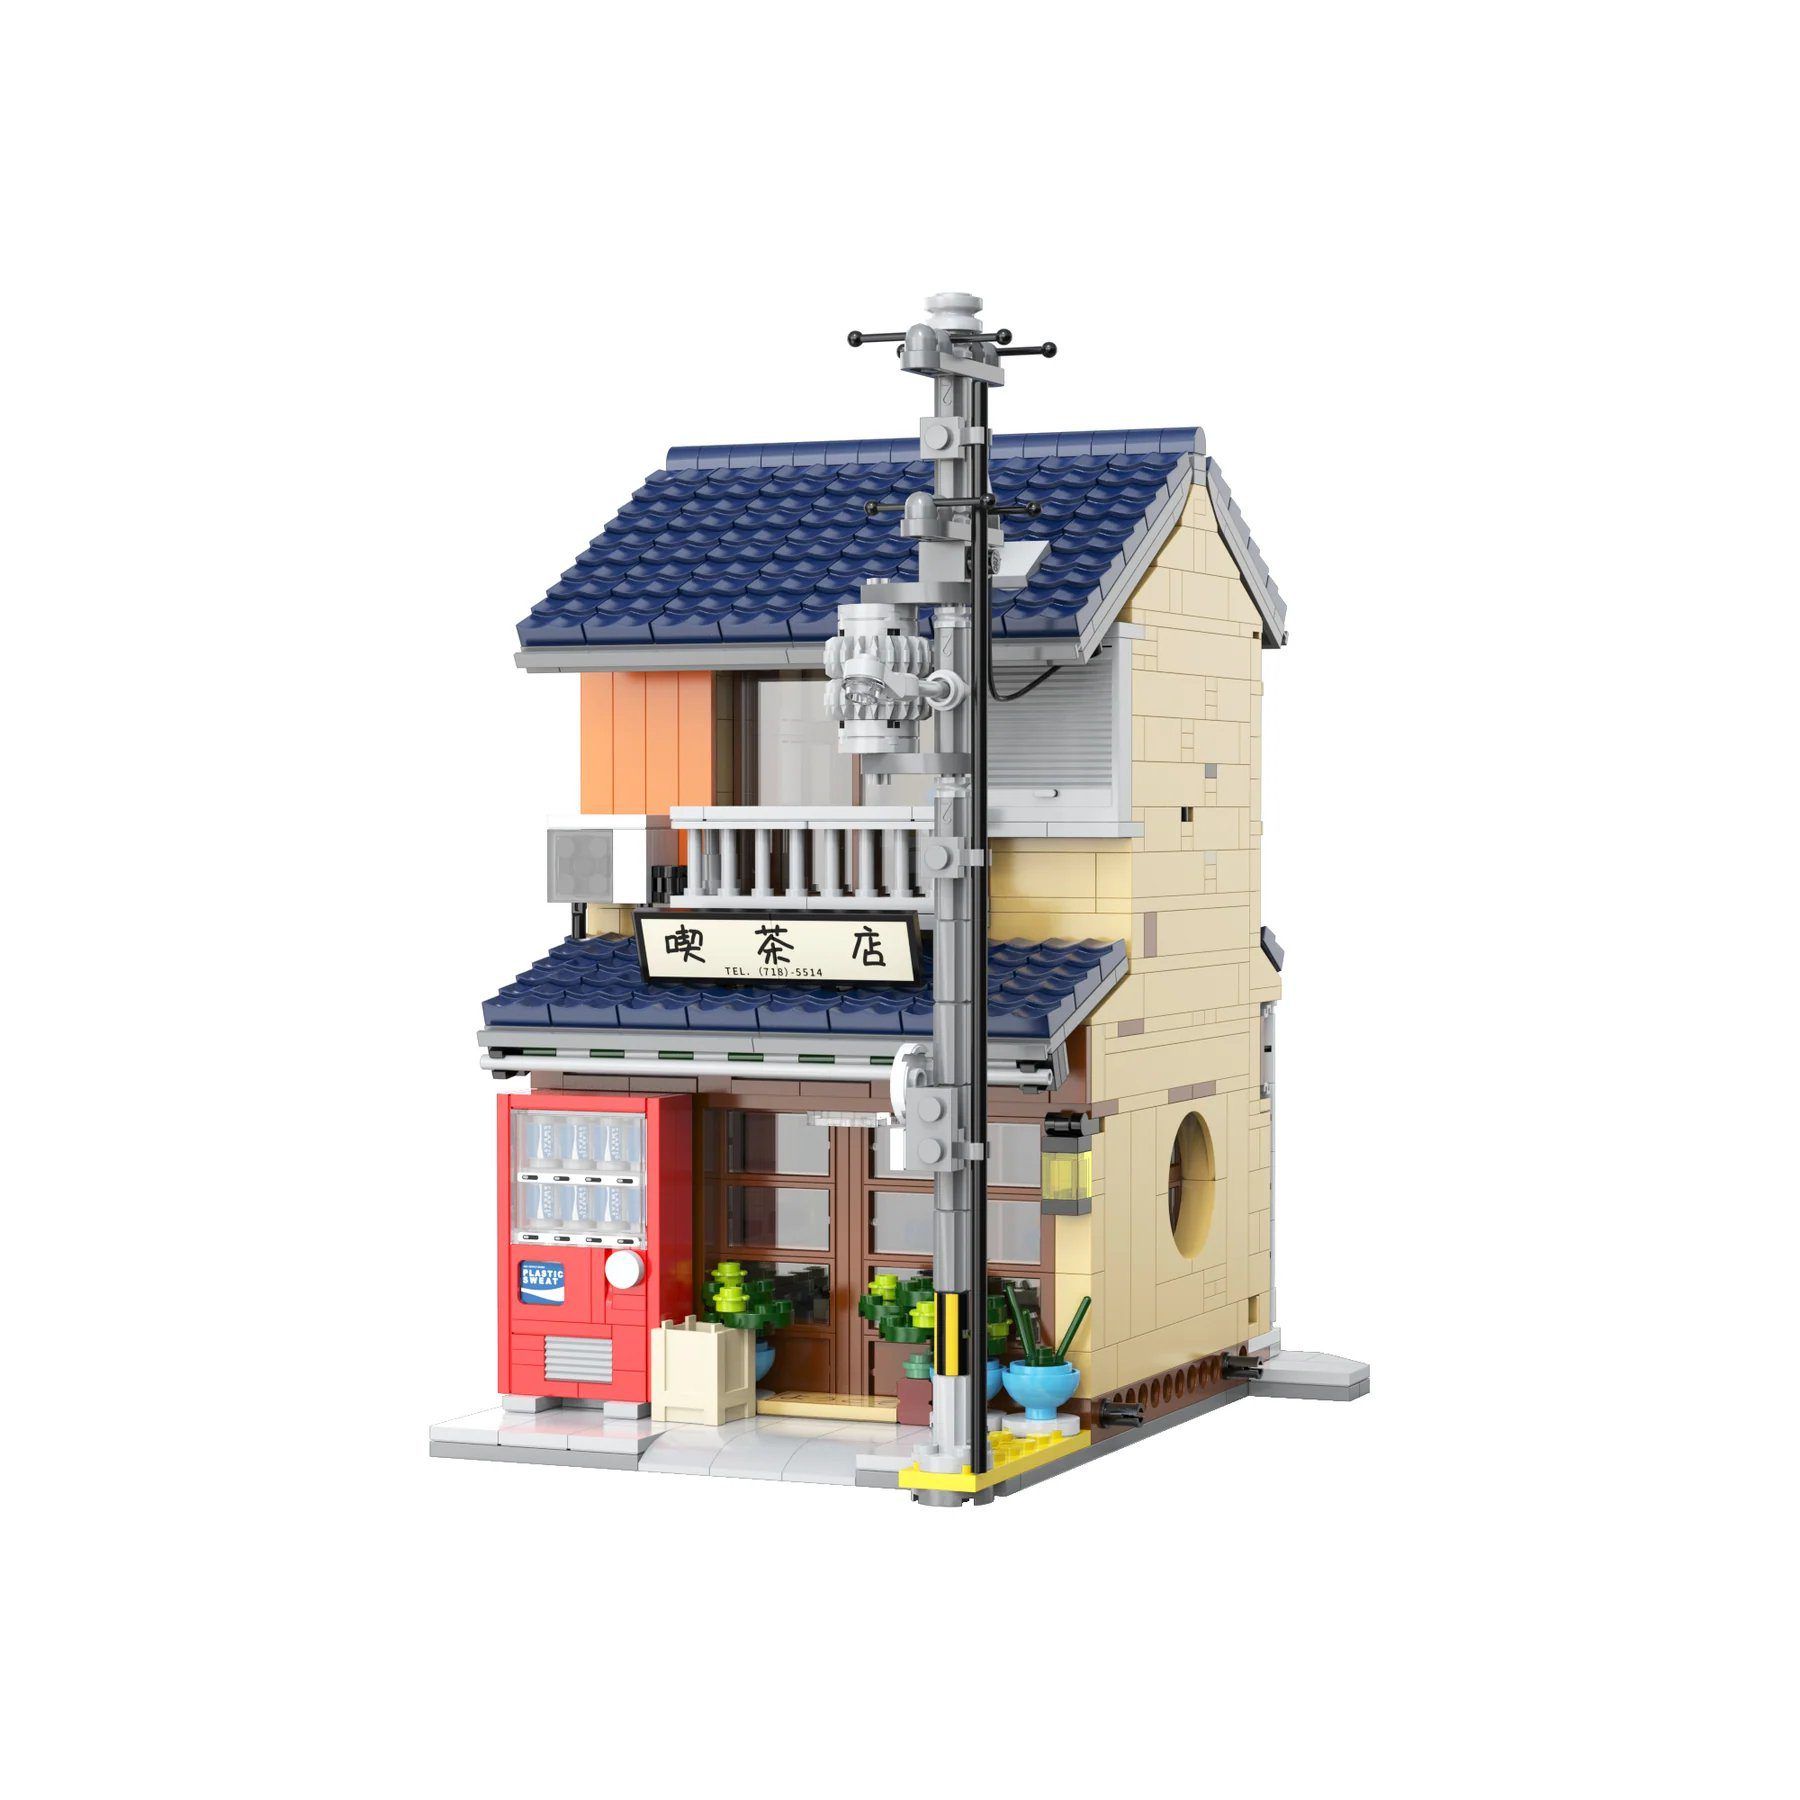  Mô Hình Nhựa 3D Lắp Ráp CaDA Tiệm Trà Nhật Bản Wabi-sabi C66010 (1200 mảnh, có đèn LED) - LG0119 